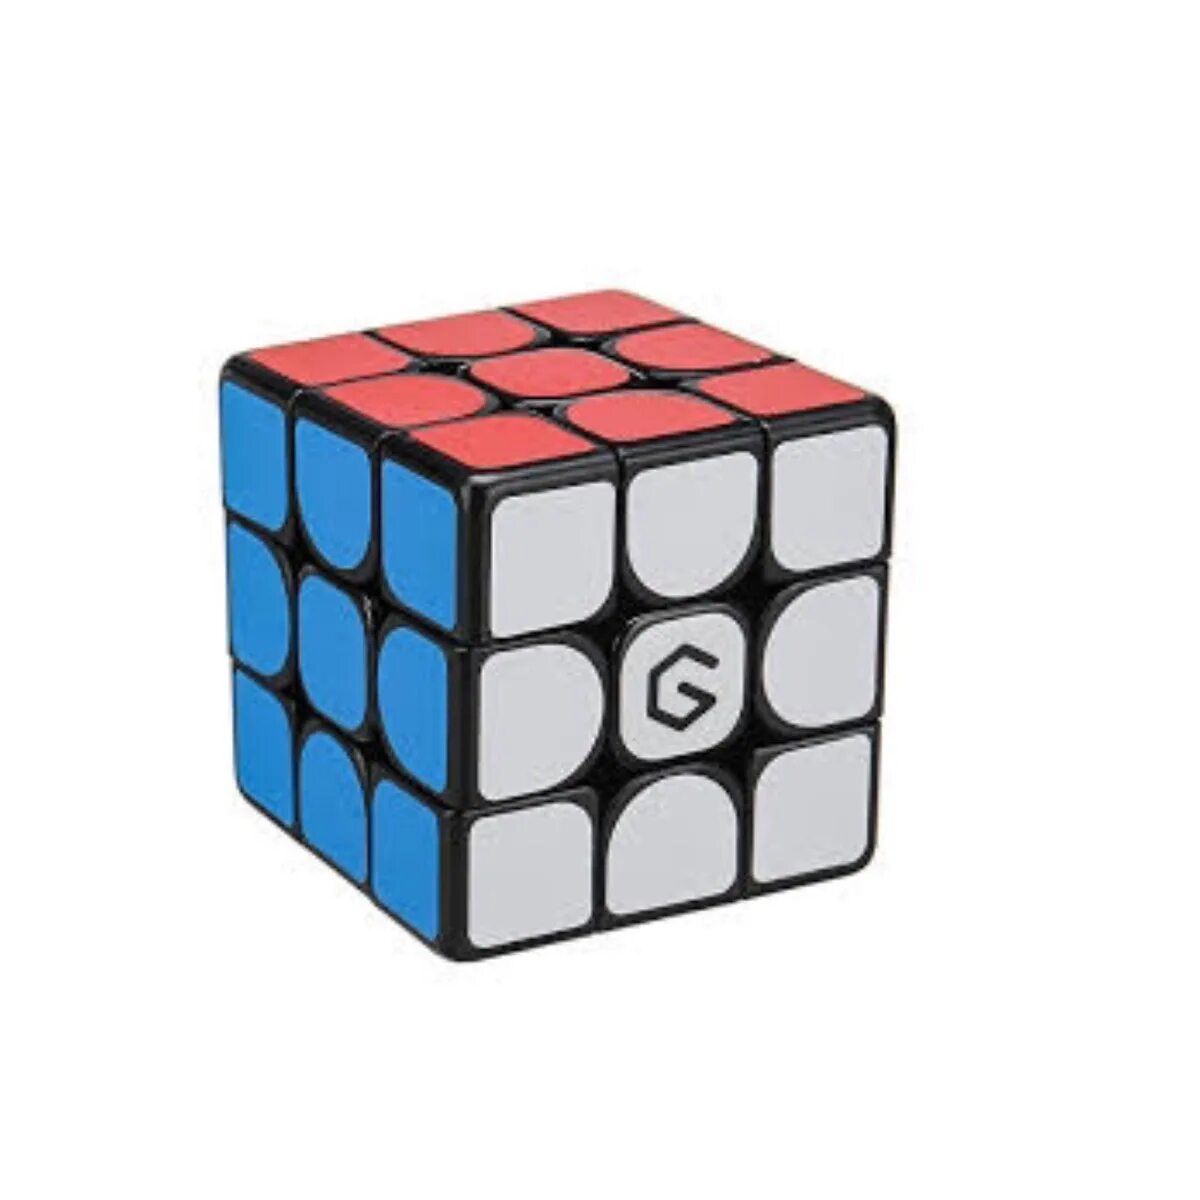 Купить куб в уфе. Кубик Рубика Xiaomi Gicube m3. Кубик Рубика Xiaomi Giiker Design Magnetic Cube m3. Кубик Рубика Xiaomi Giiker m3 3x3x3 (Сяоми Гикер м3 3х3х3). Xiaomi Giiker головоломка.